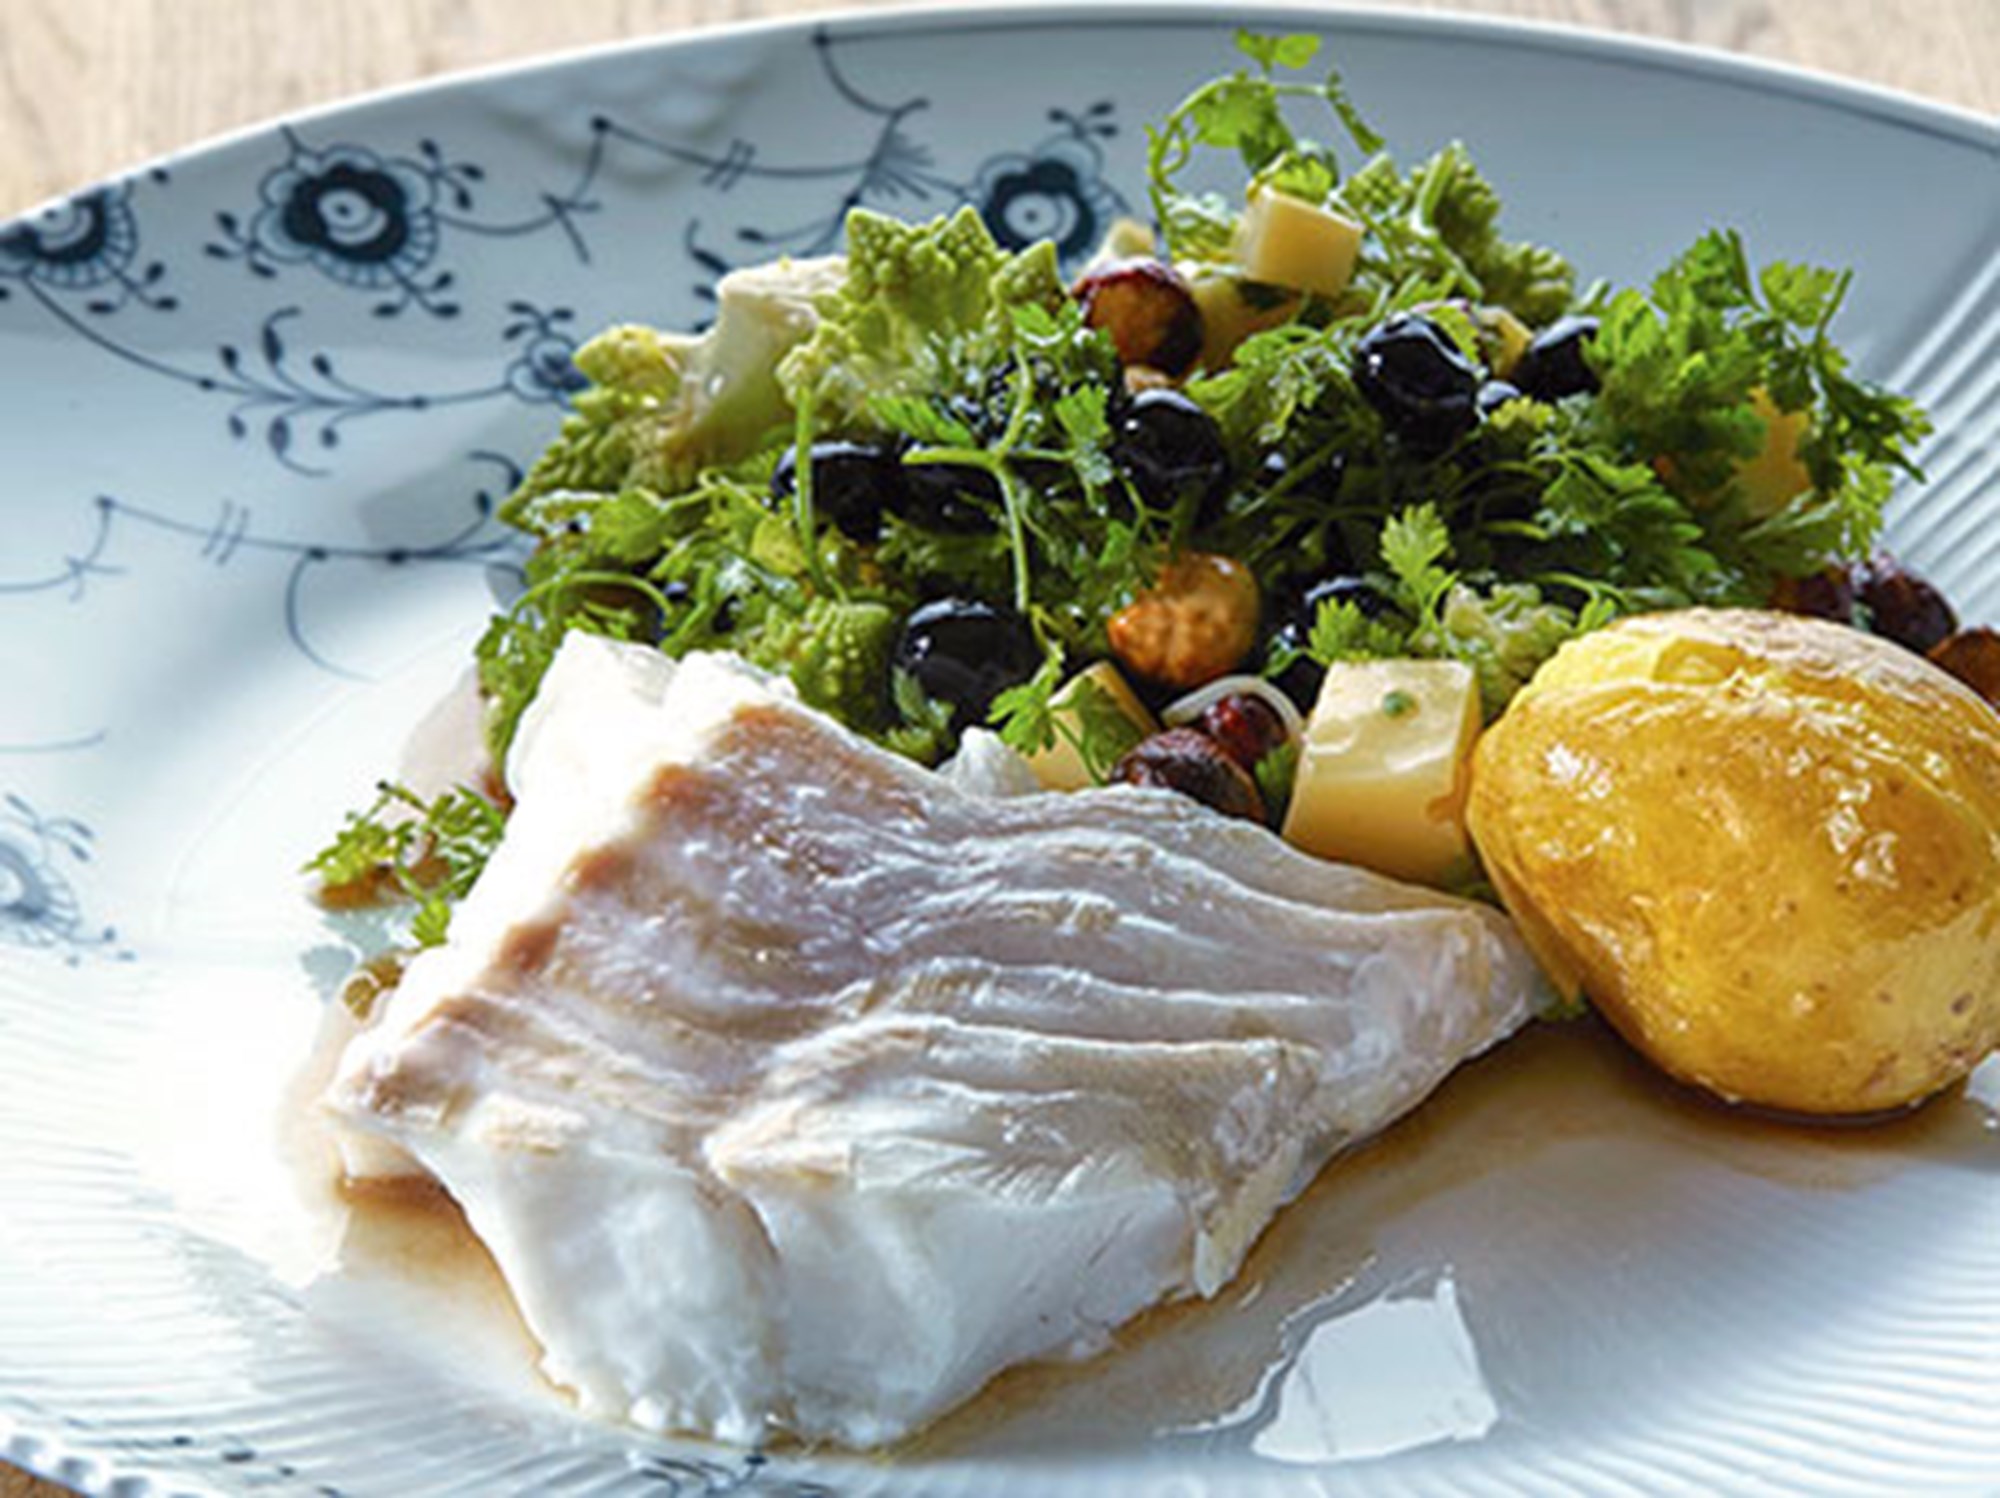 Ovnbagt torsk med salat af romanesco, blåbær, hasselnødder og honning/sennepsvinaigrette